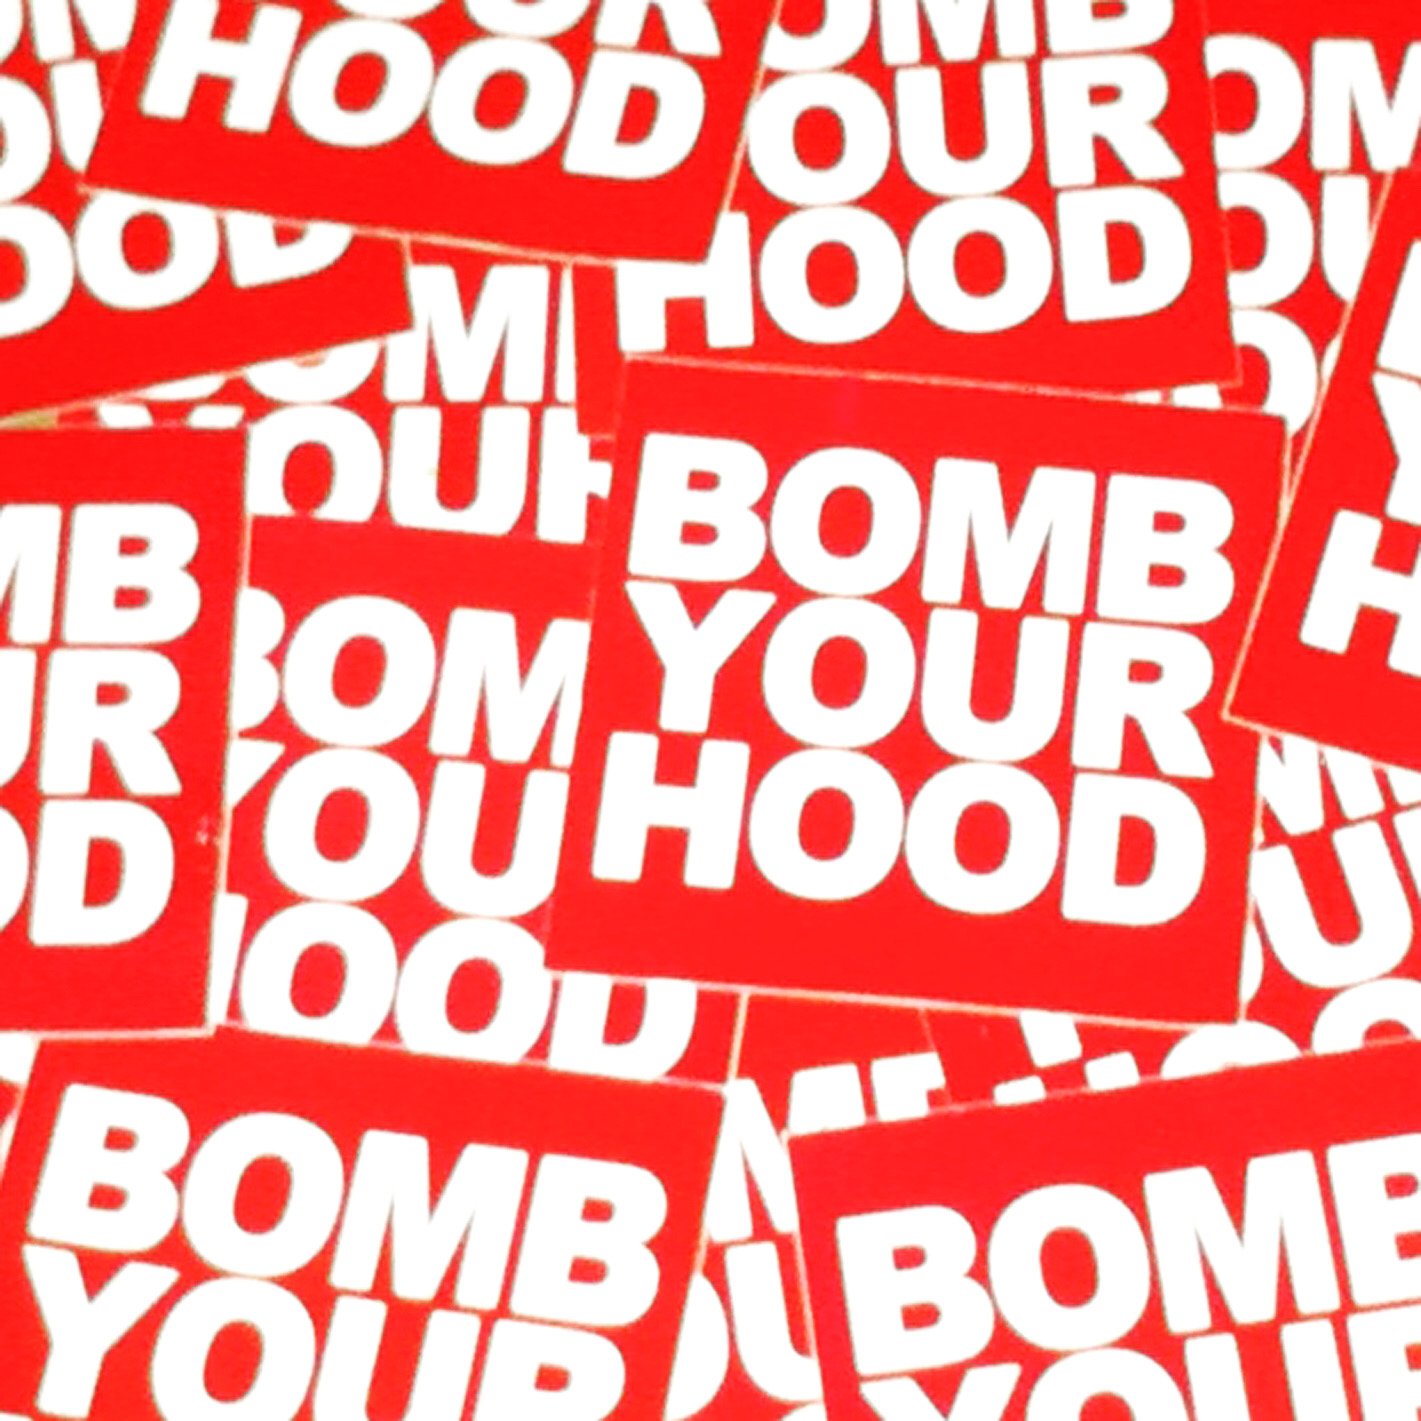 Image of Bomit "Bomb Your Hood"